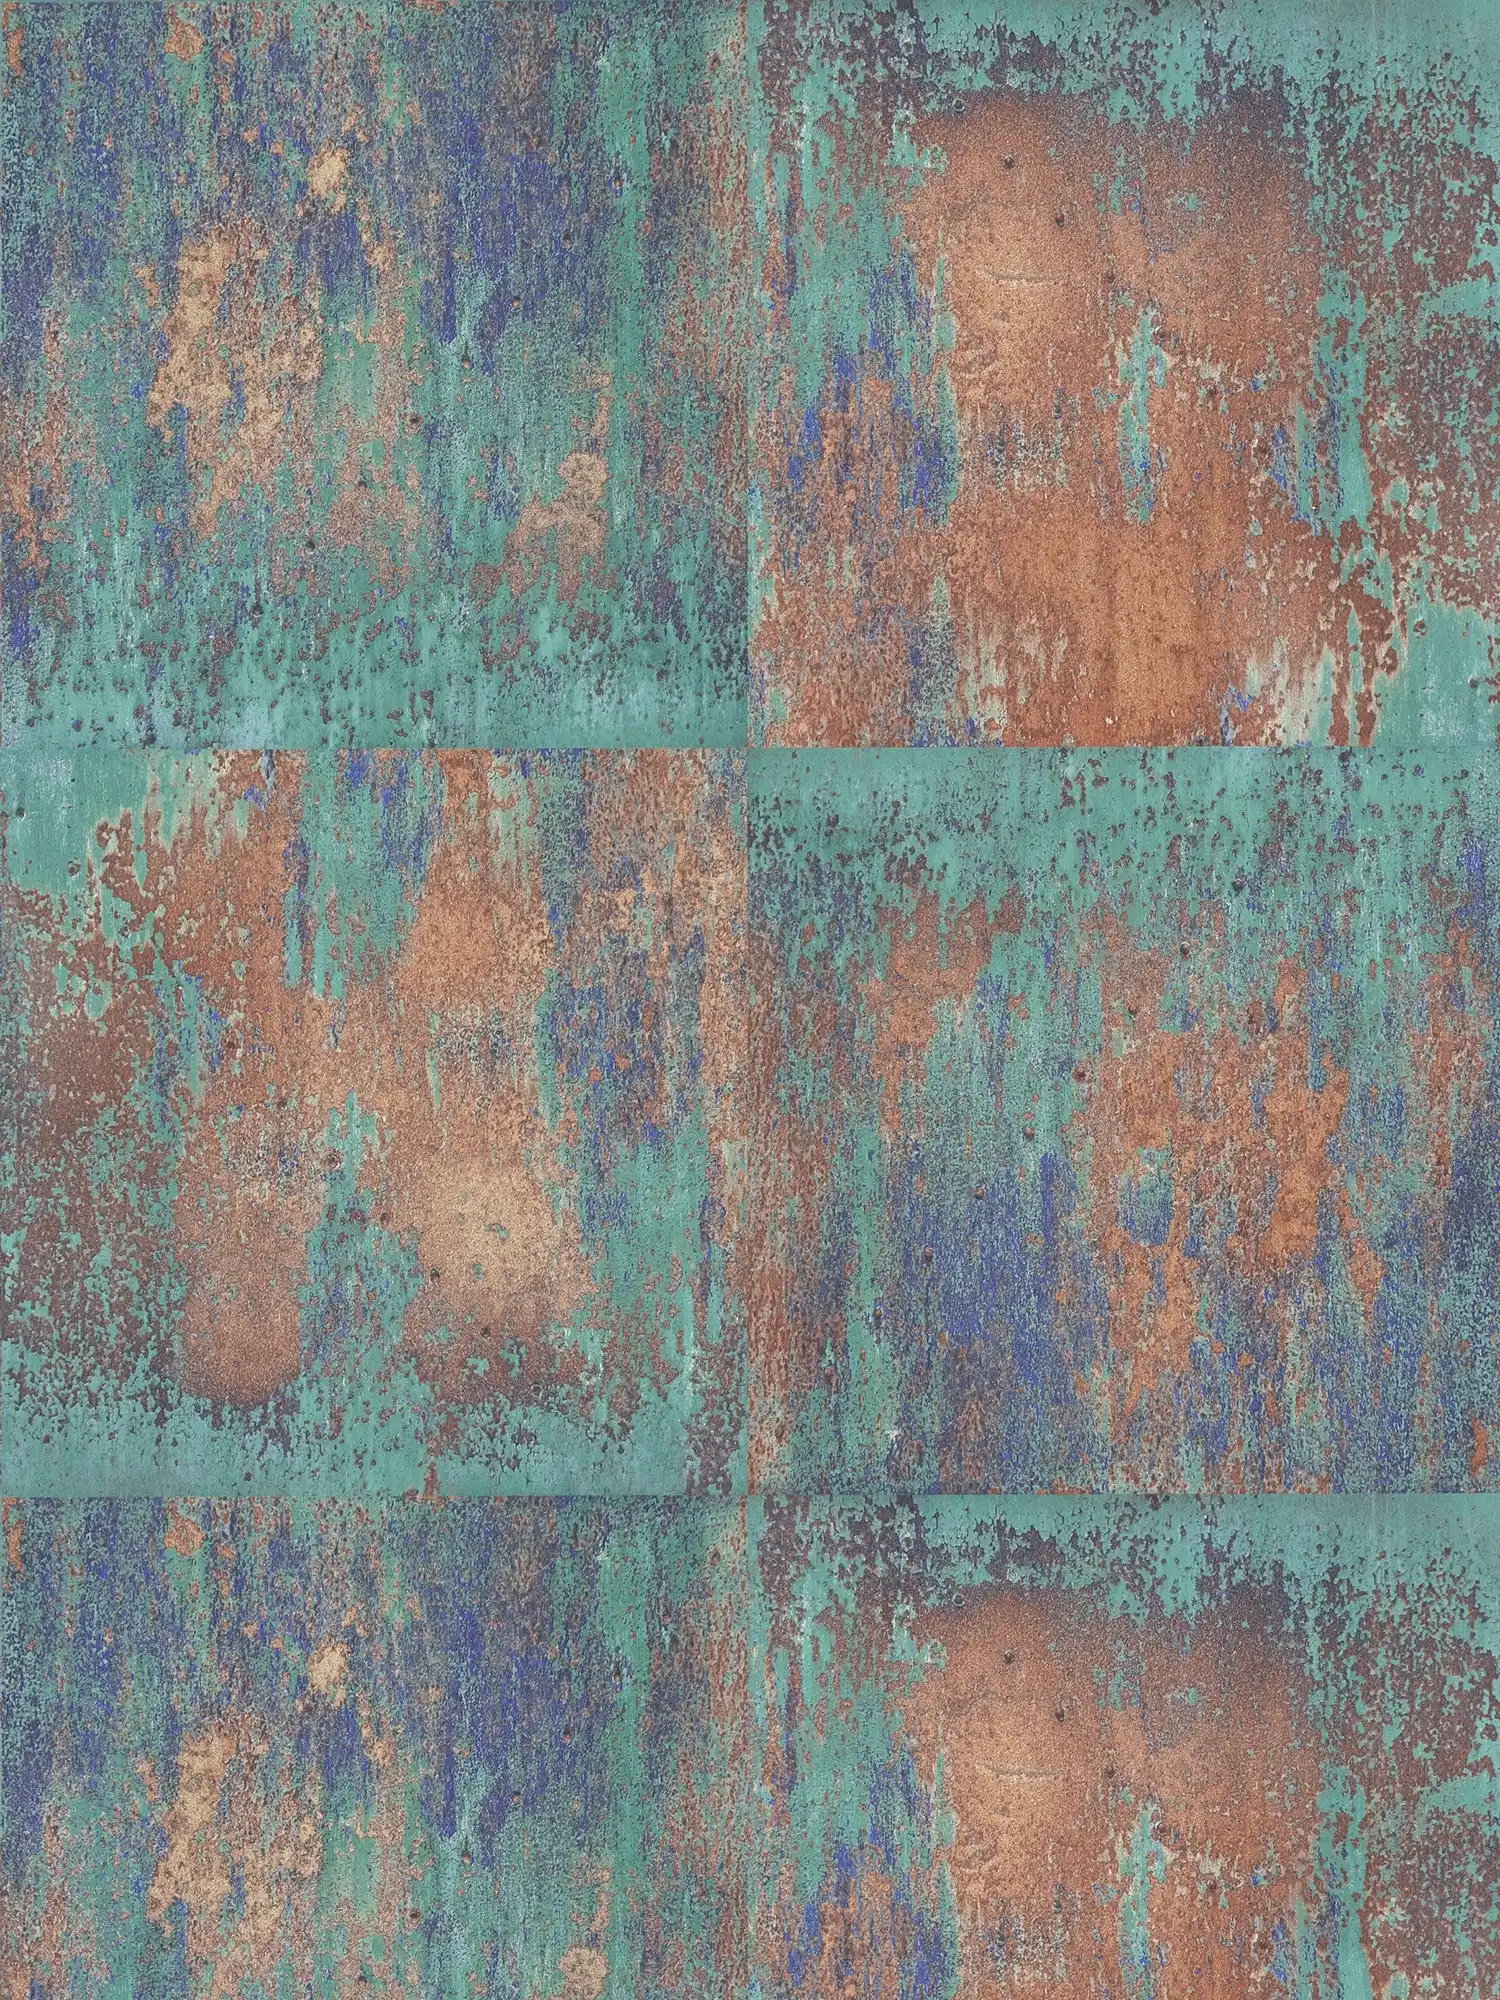 Zelfklevend behangpapier | roestlook design rustiek metaal - blauw, bruin
